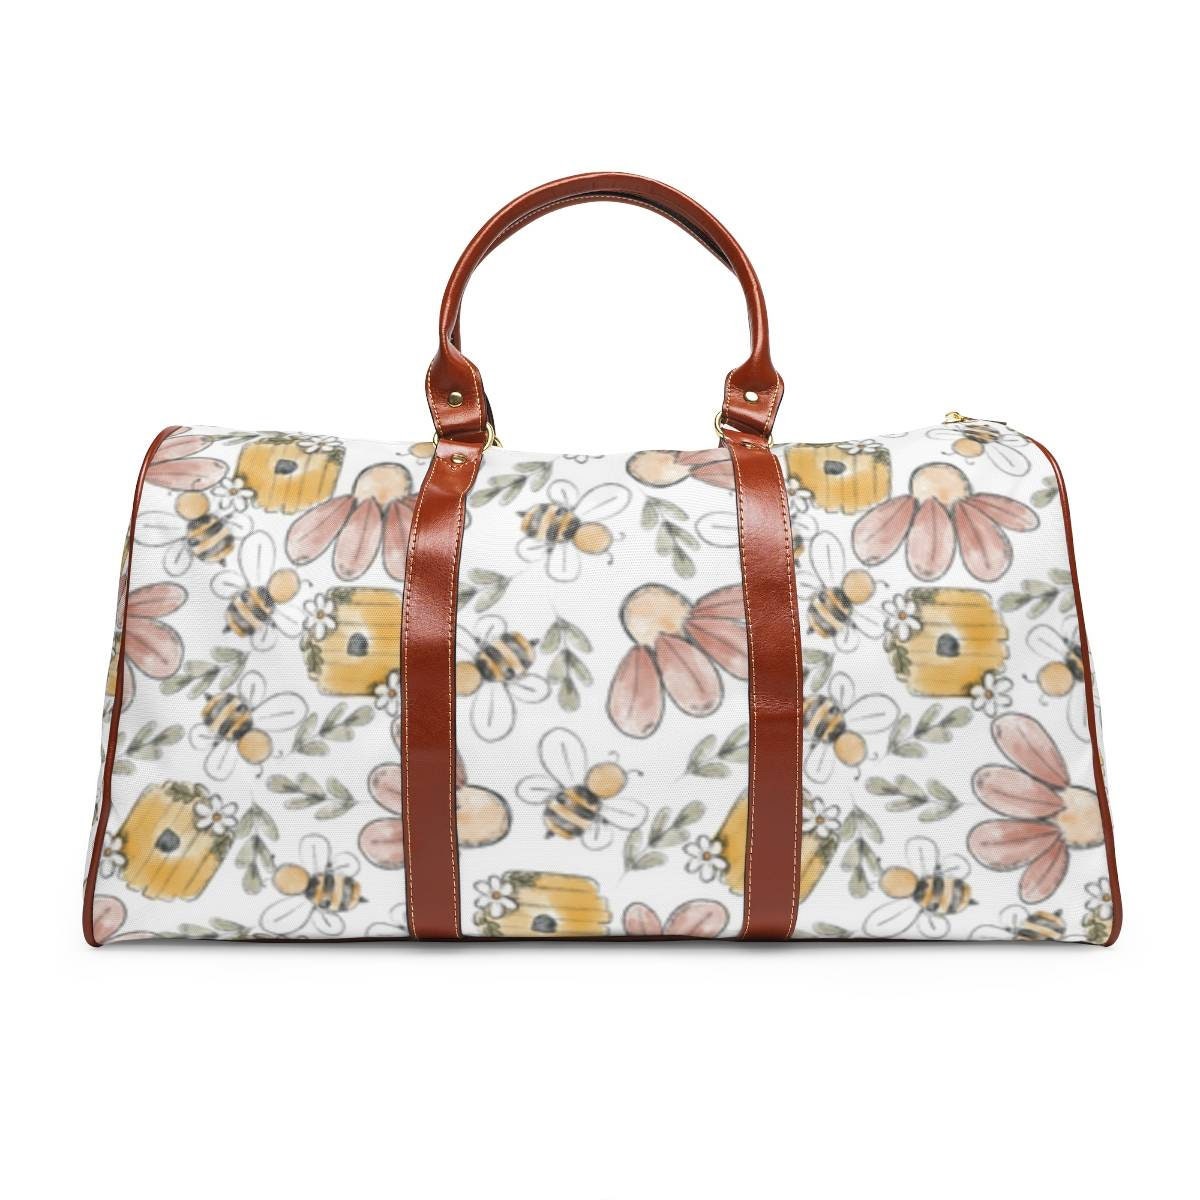 Floral bees overnight bag with zipper Hospital bag Tassen & portemonnees Bagage & Reizen Weekendtassen SPECIAL ORDER ITEM Weekender bag 